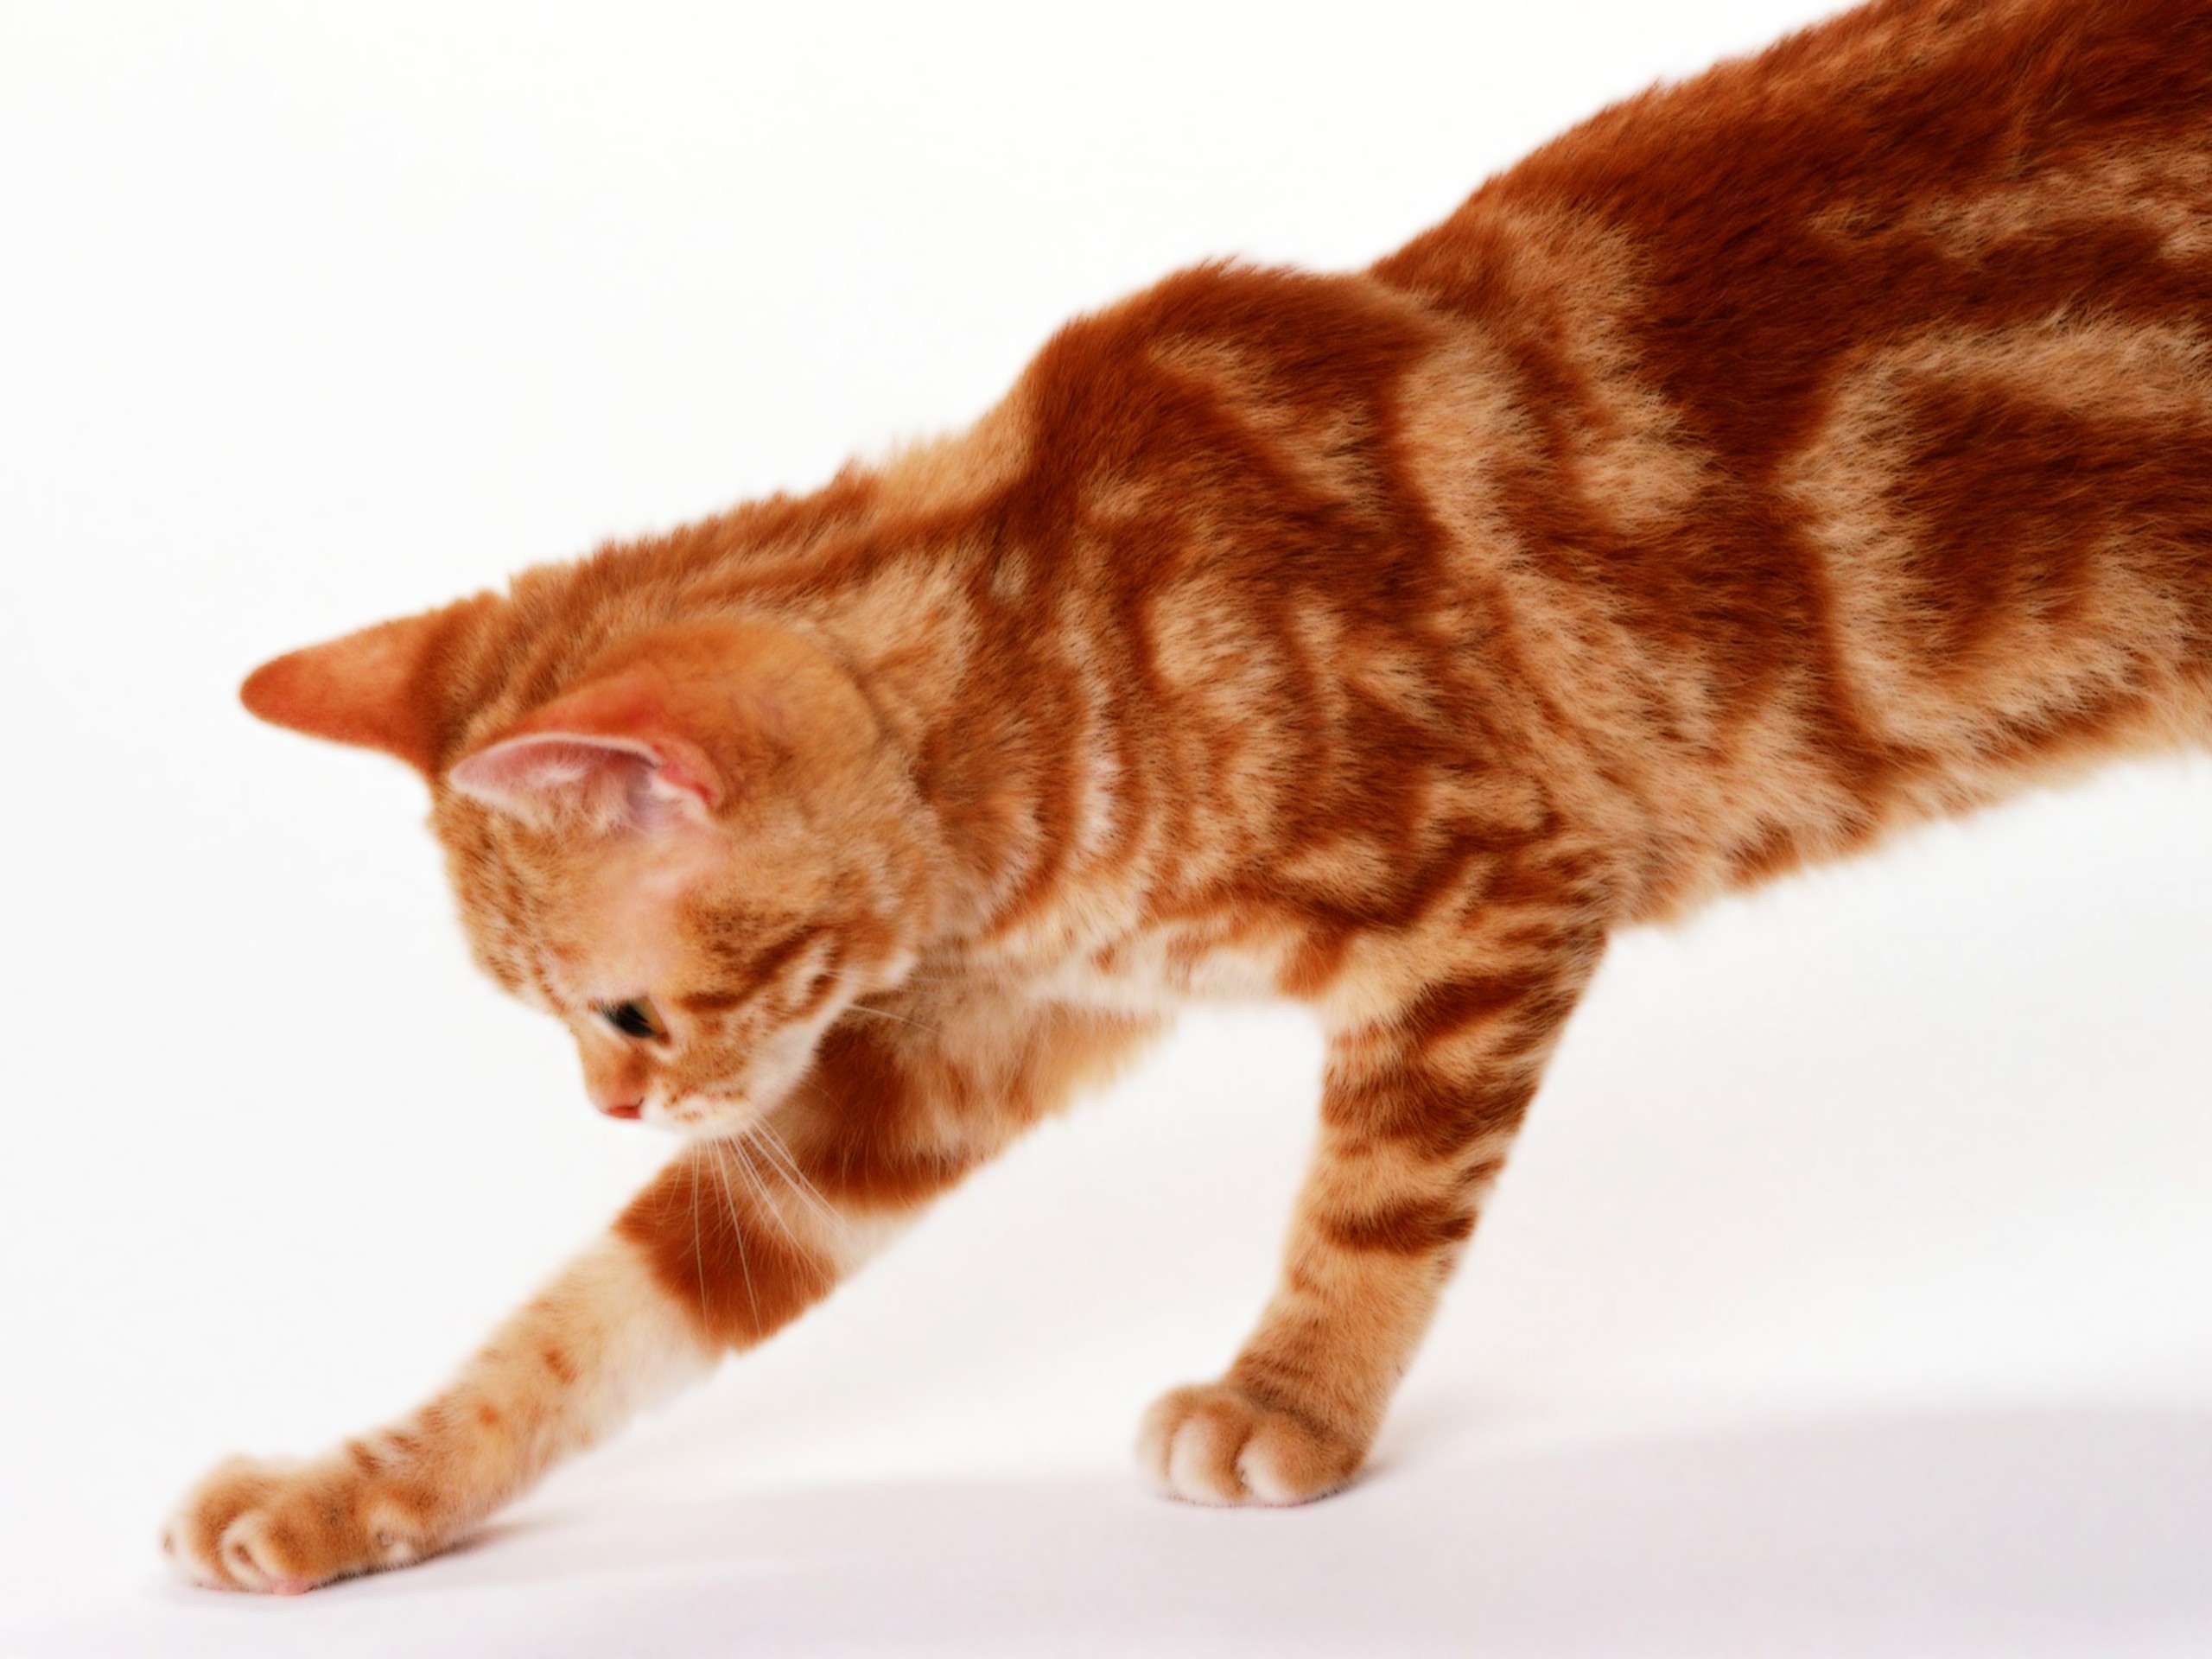 Рыжие породы кошек с фотографиями. Европейская короткошерстная табби рыжий. Европейская короткошерстная кошка рыжая. Европейская короткошерстная кошка рыжего окраса. Бенгальская короткошерстная кошка рыжая.